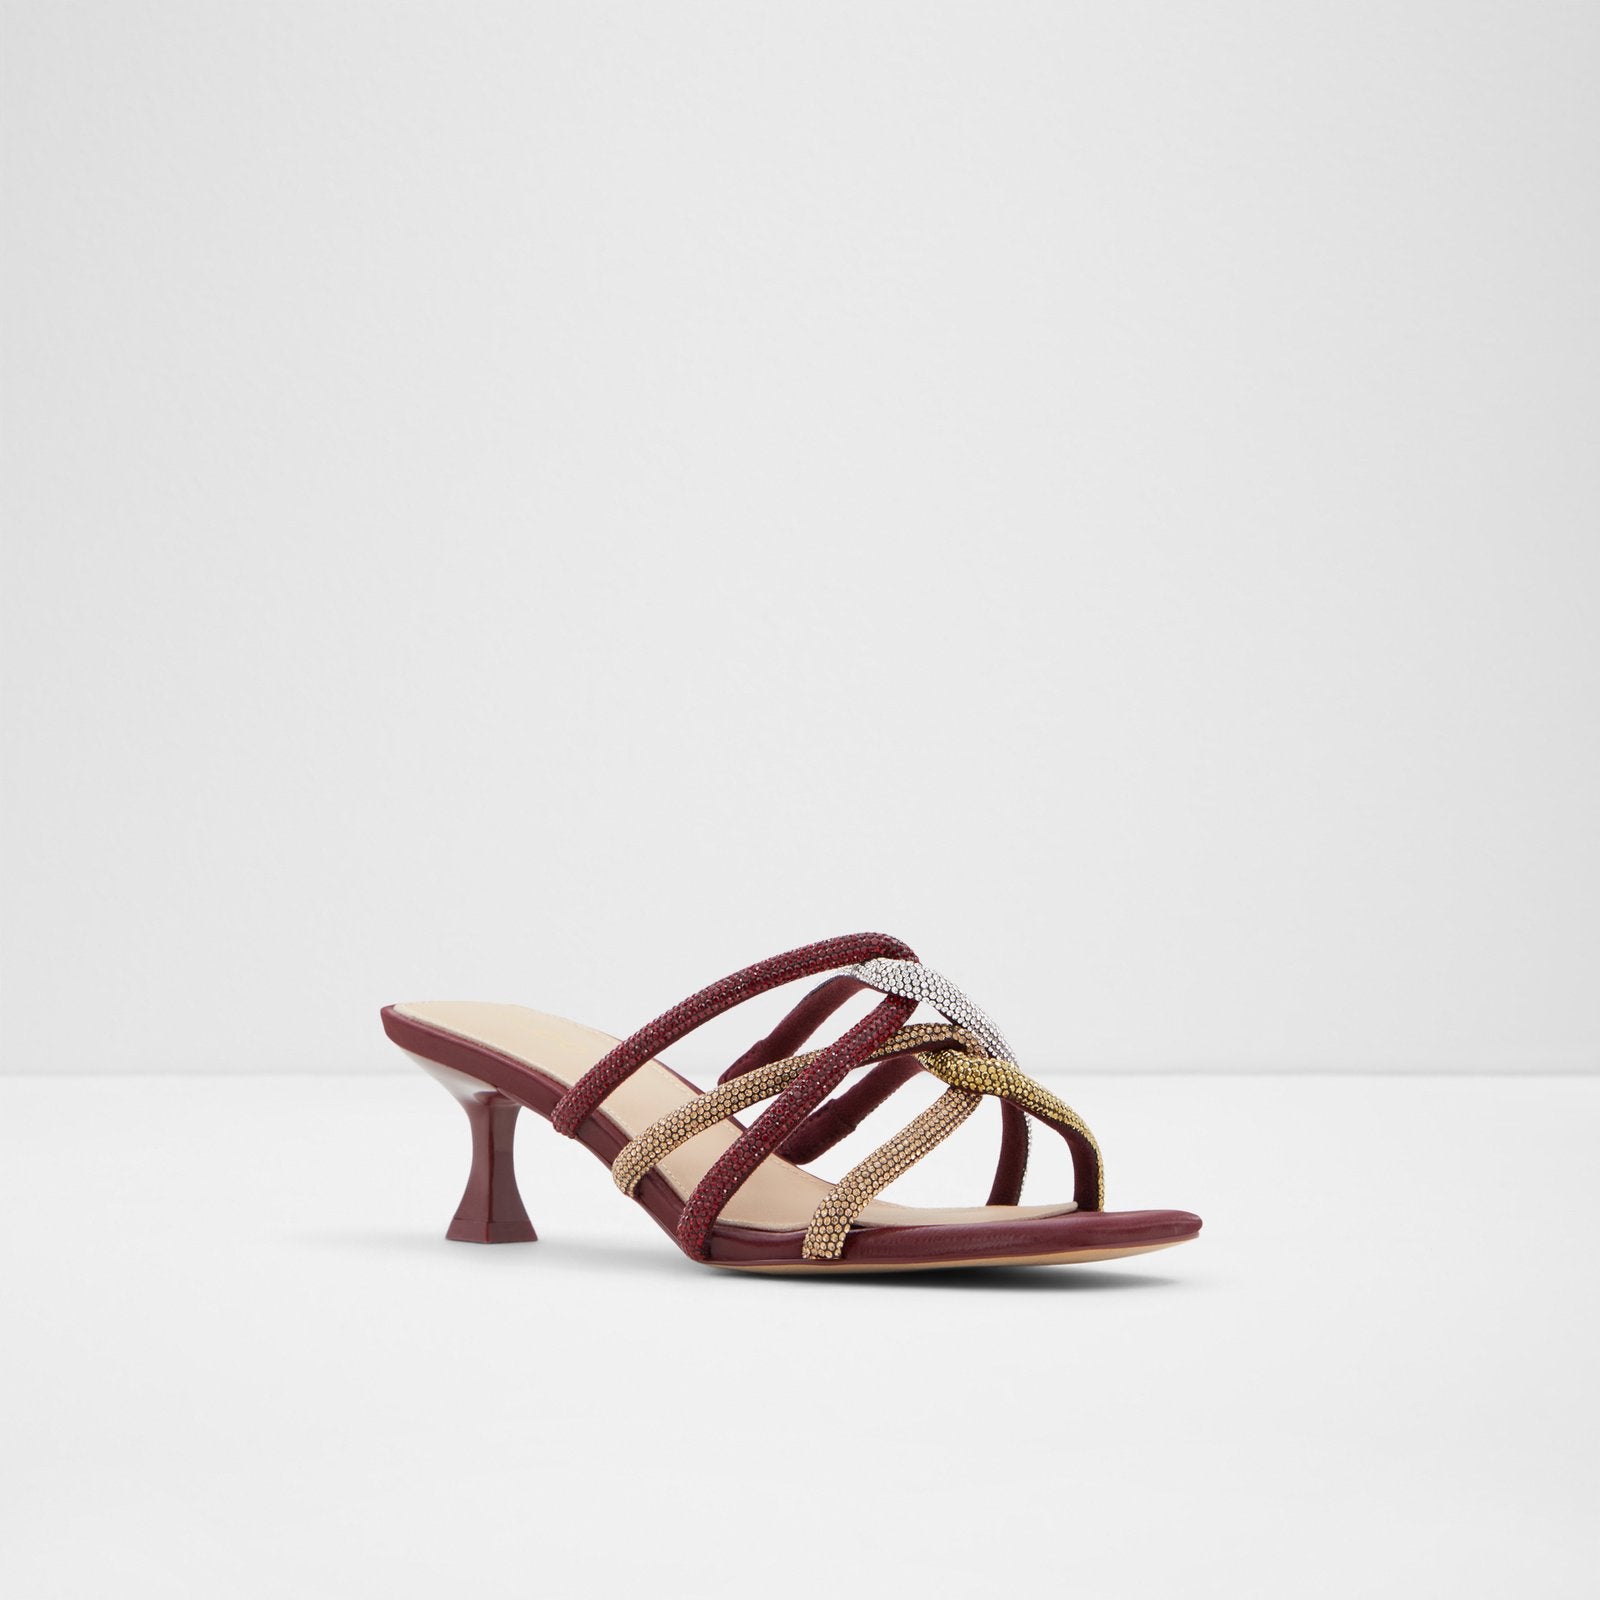 Drevia Women Shoes - Bordo - ALDO KSA